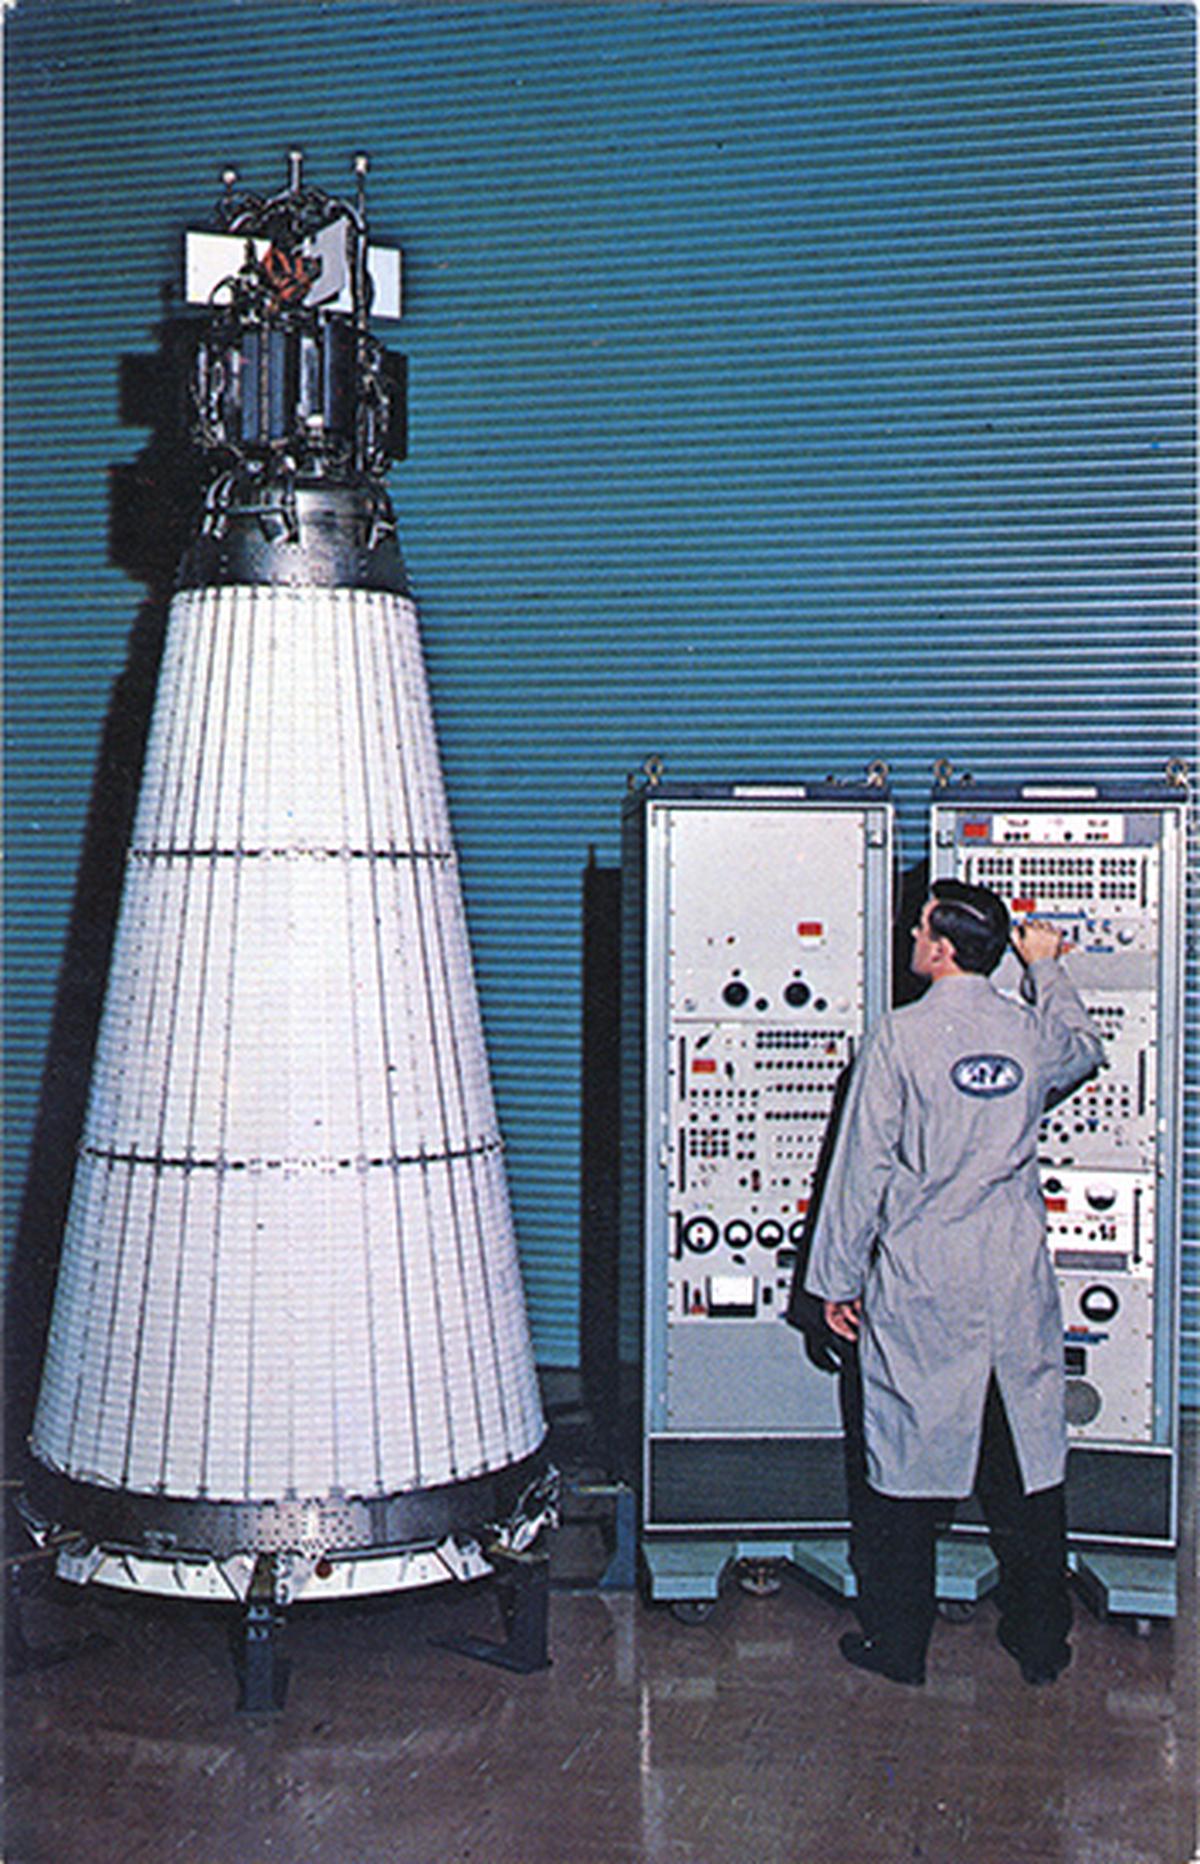 Verdens første atomreaktor til at operere i rummet, SNAP-10A, blev opsendt i kredsløb om Jorden den 3. april 1965.